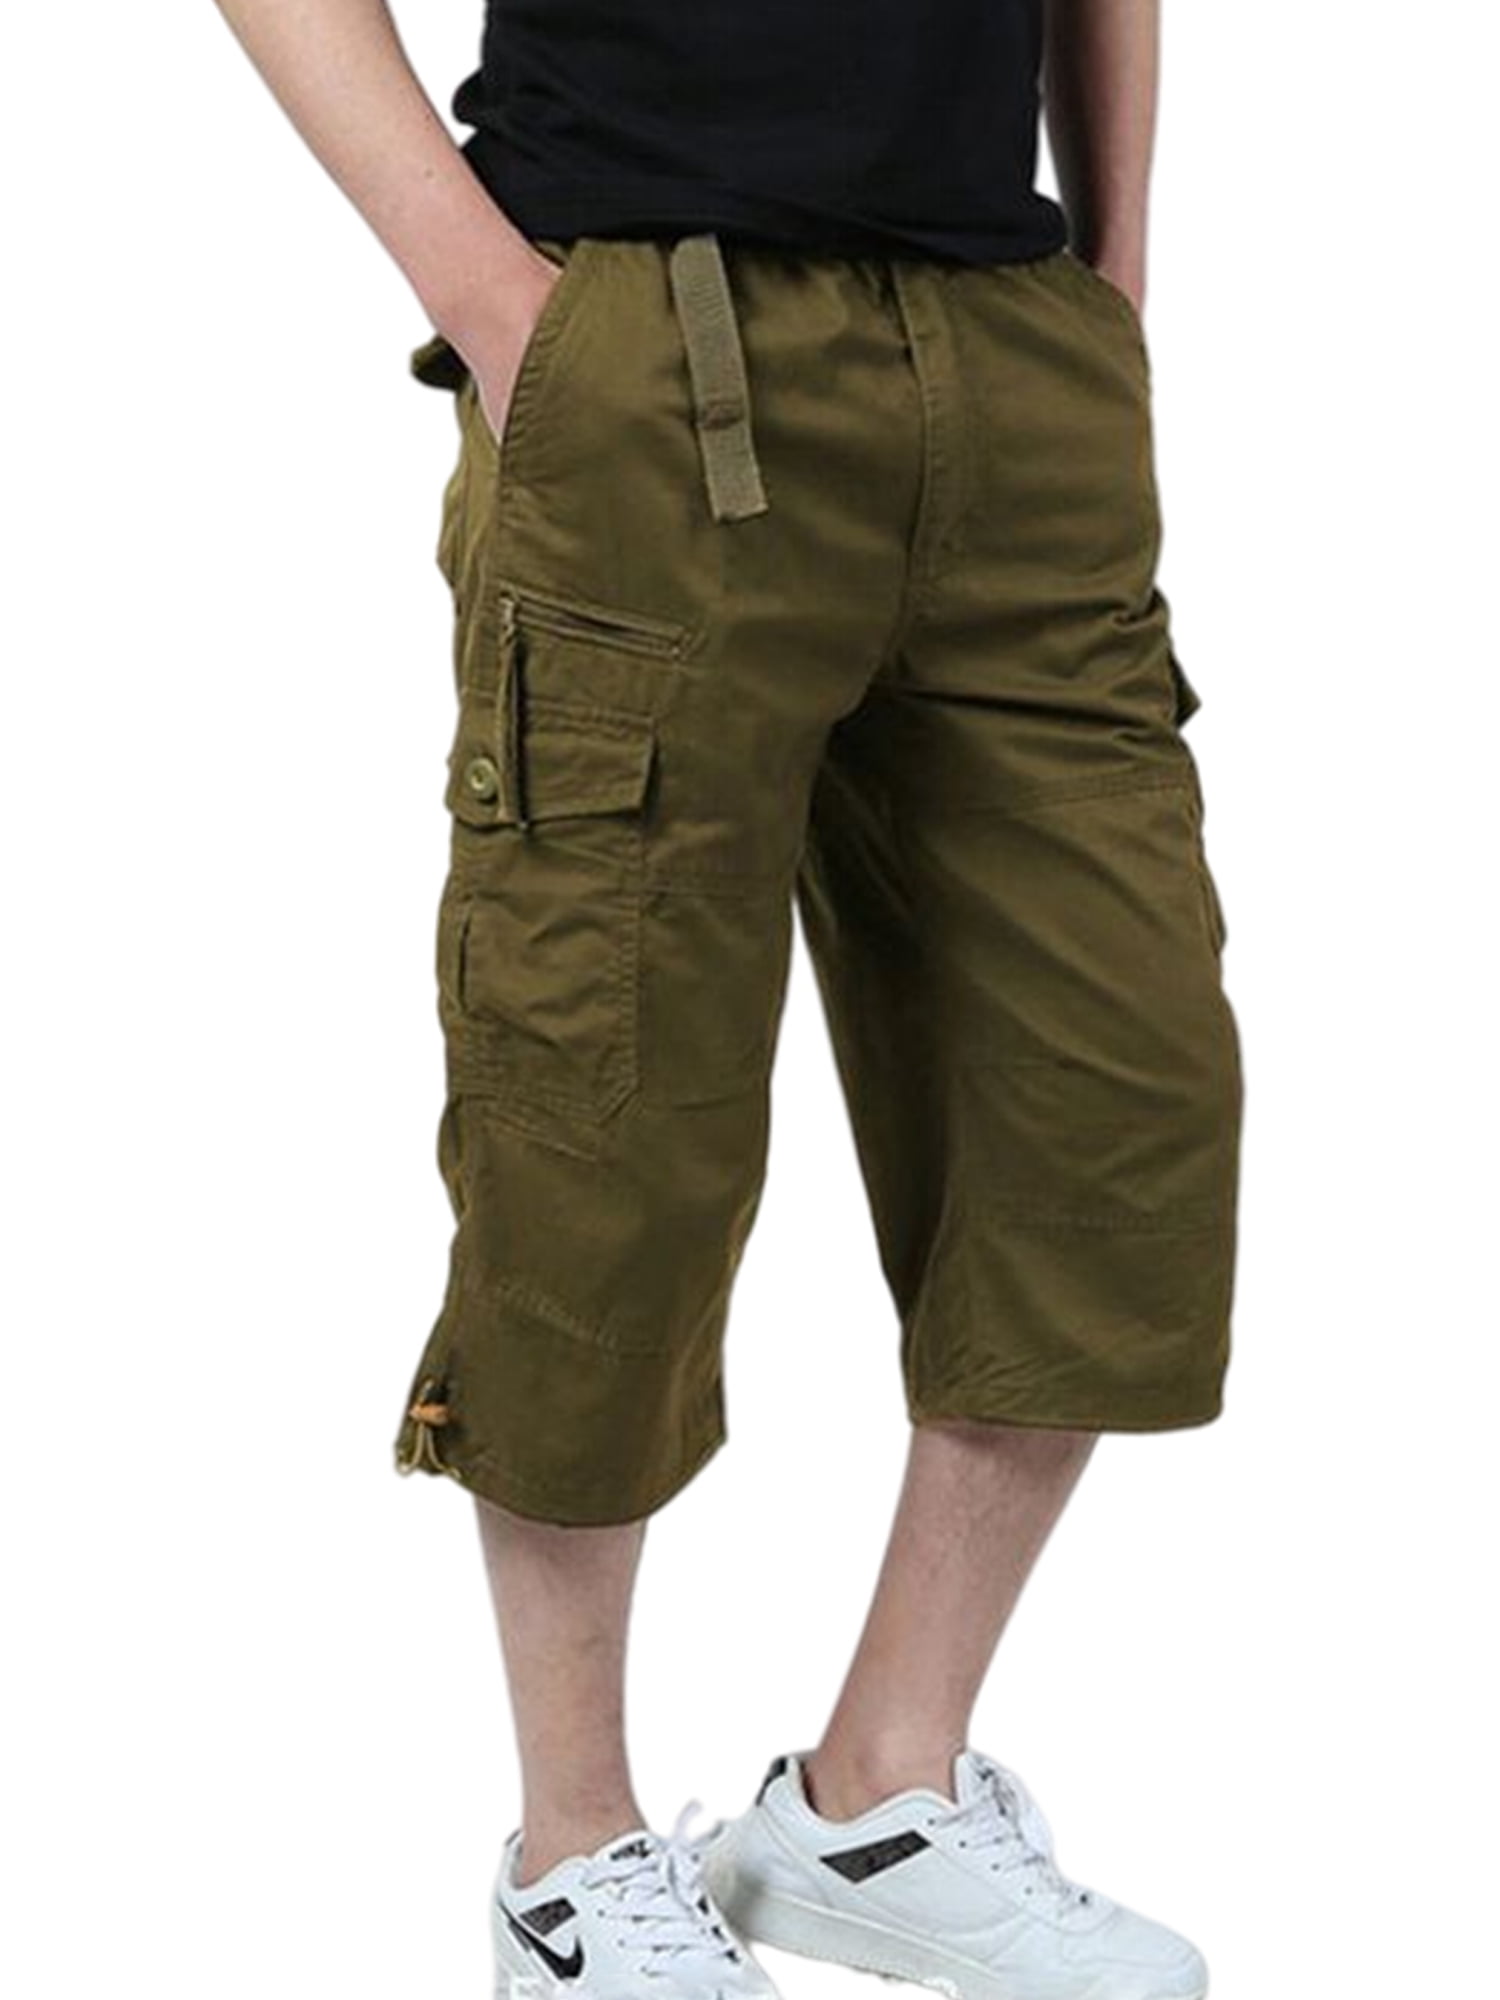 Frontwalk Mens Military Cargo Shorts 3/4 Loose Fit Below Knee Capri ...